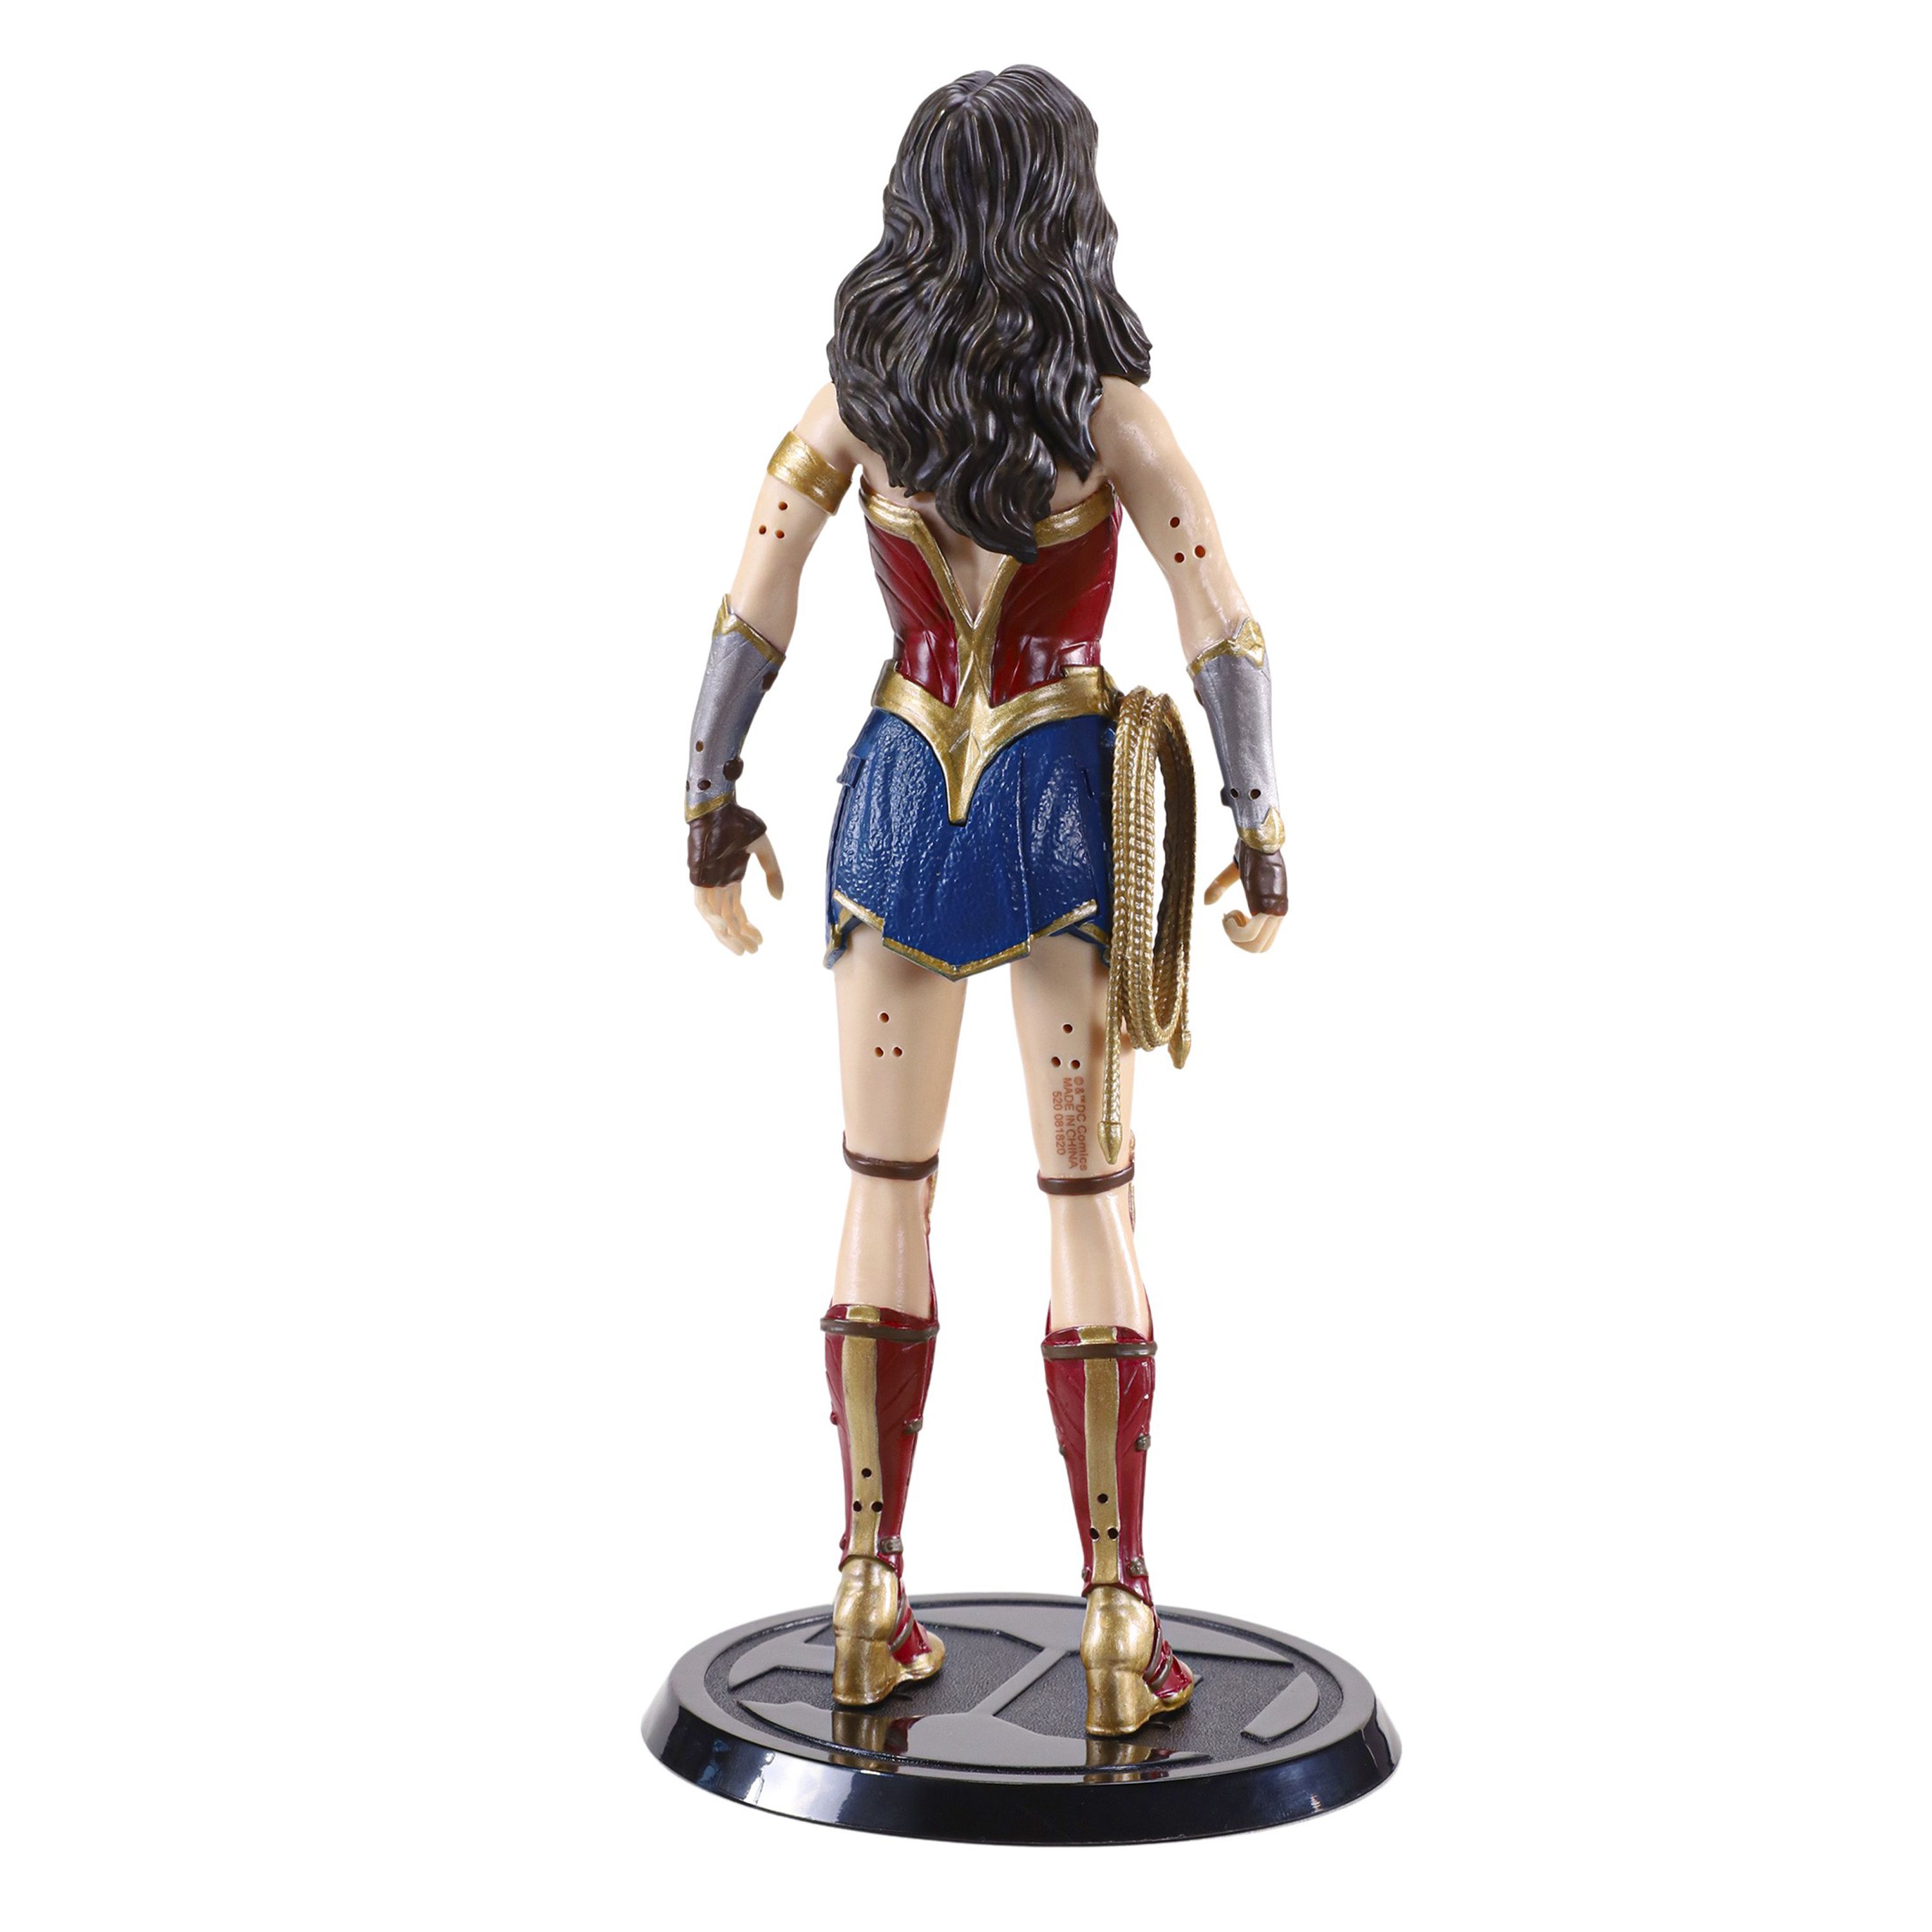 Figurina articulata de colectie Wonder Woman, Amazonian Princess,18 cm